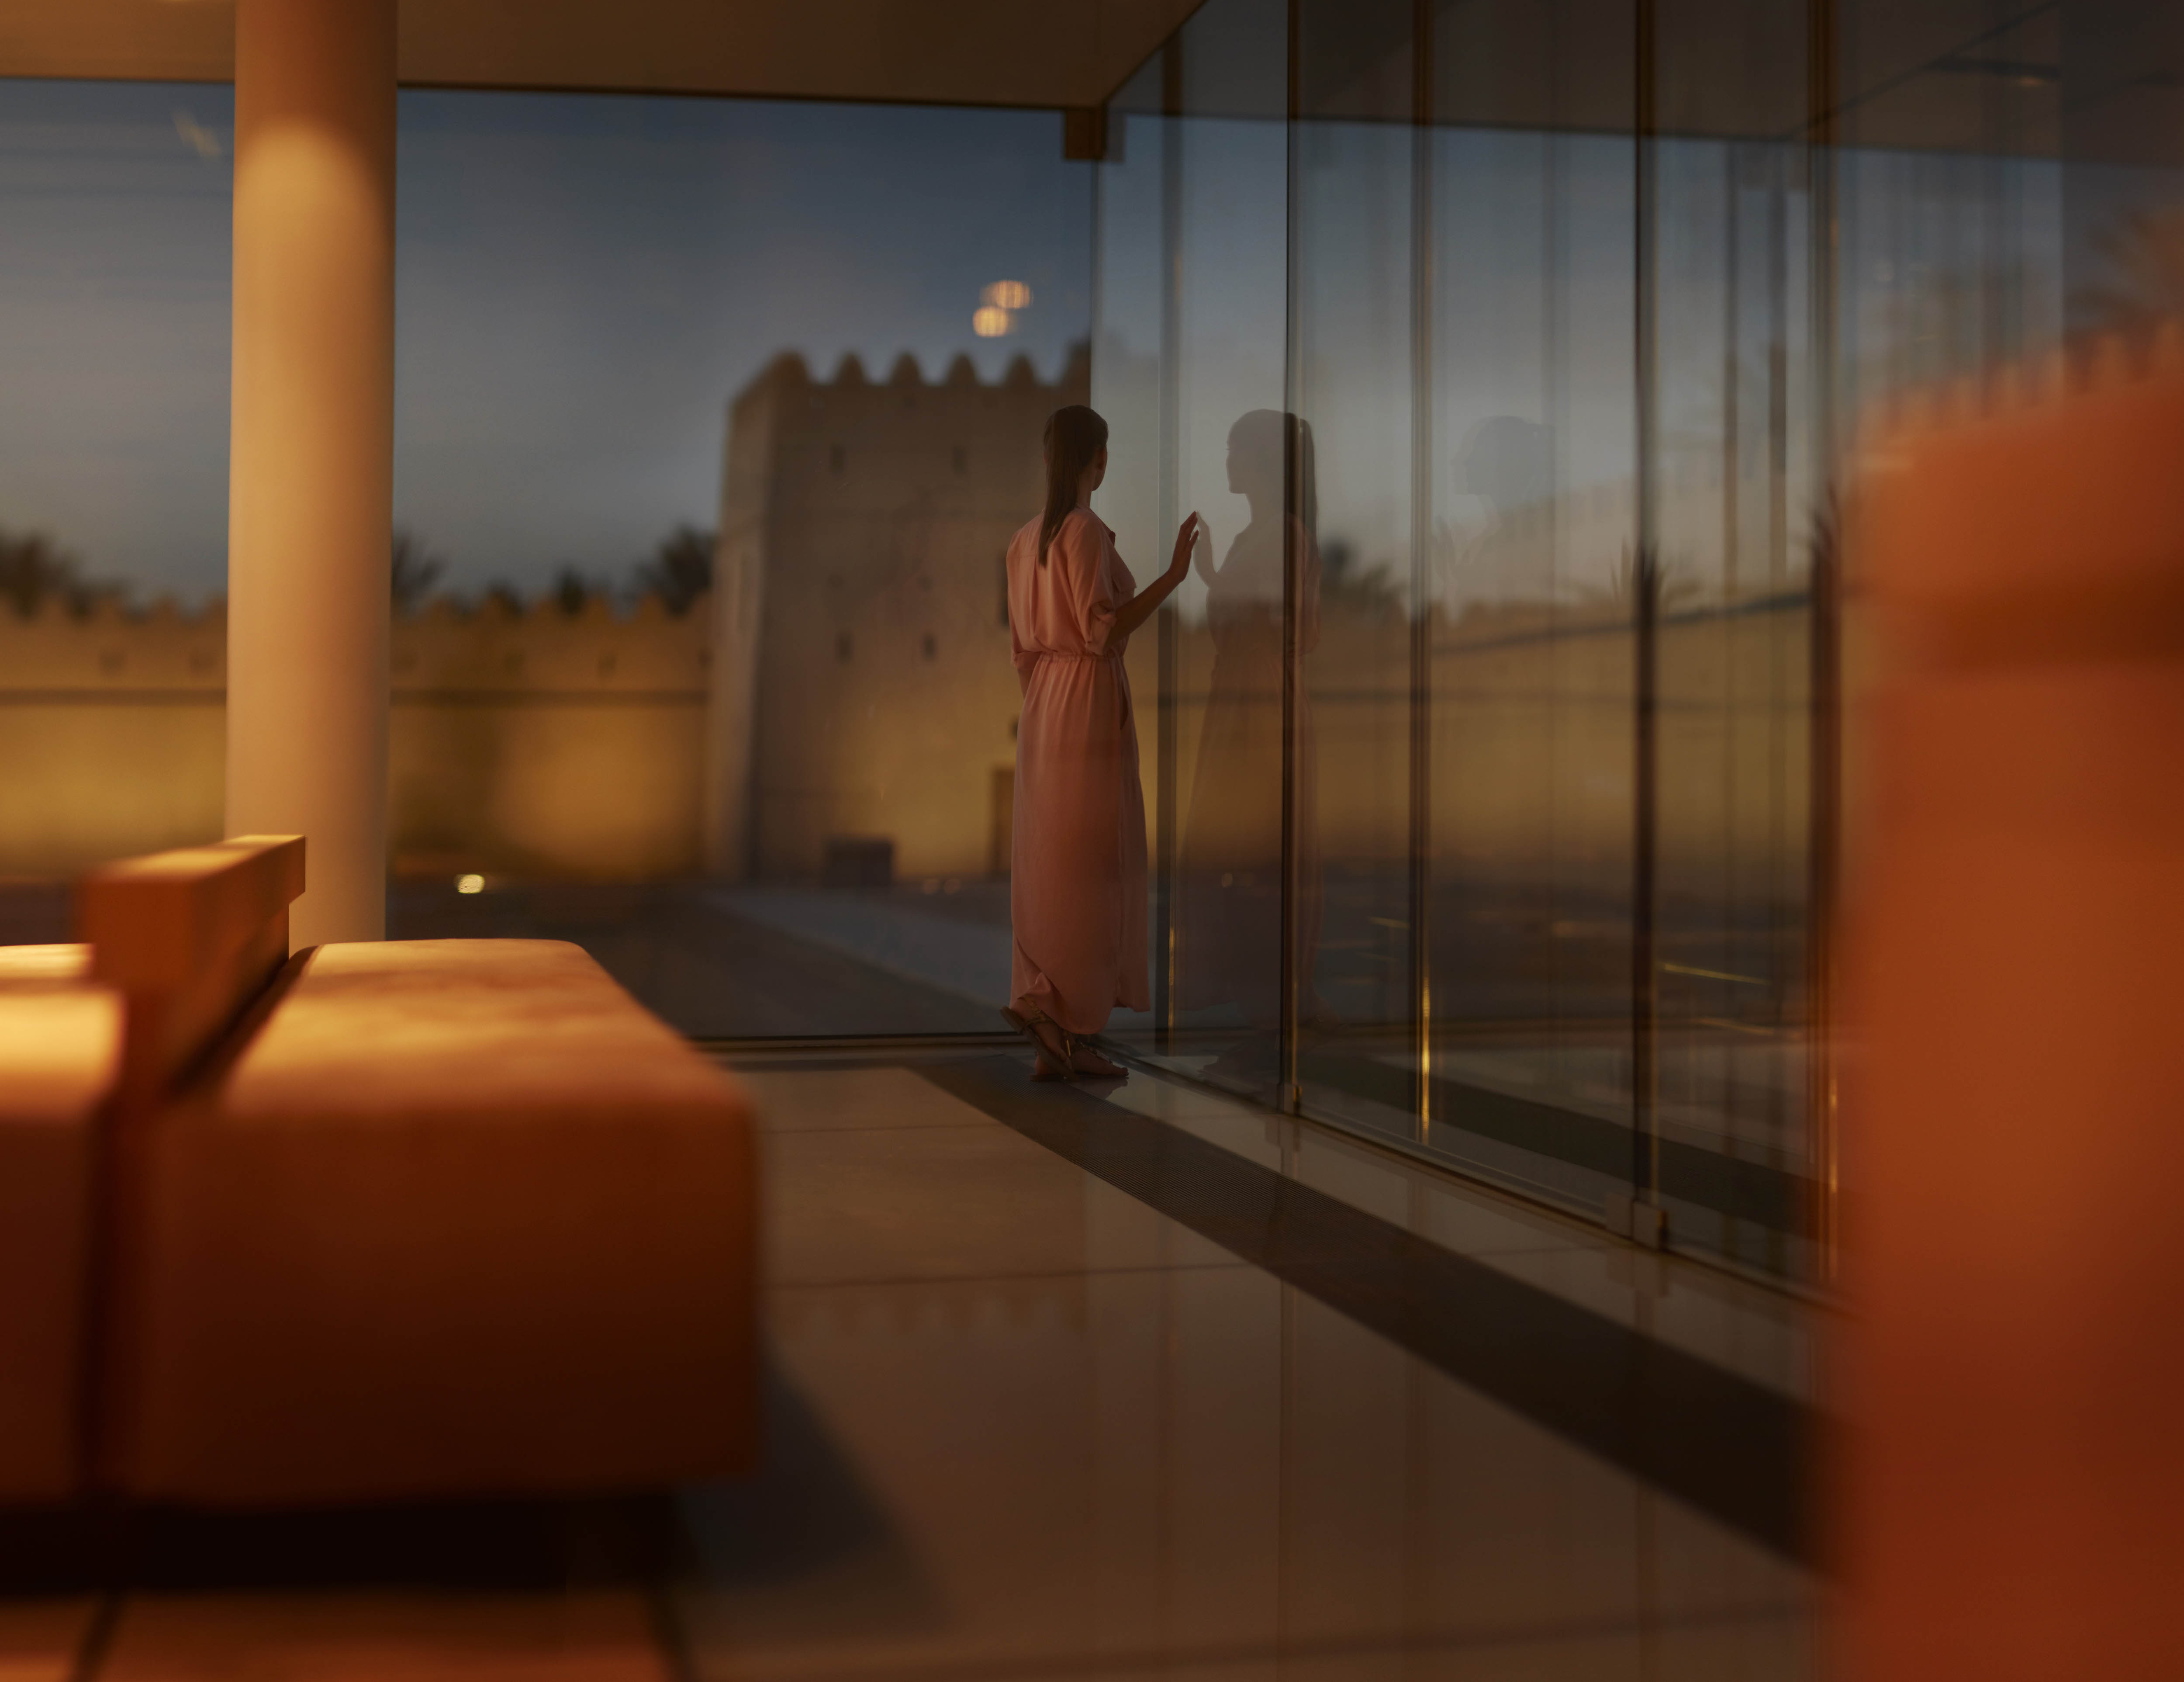 امرأة أجنبية تقف أمام جدار زجاجي قرب حصن في إمارة أبوظبي